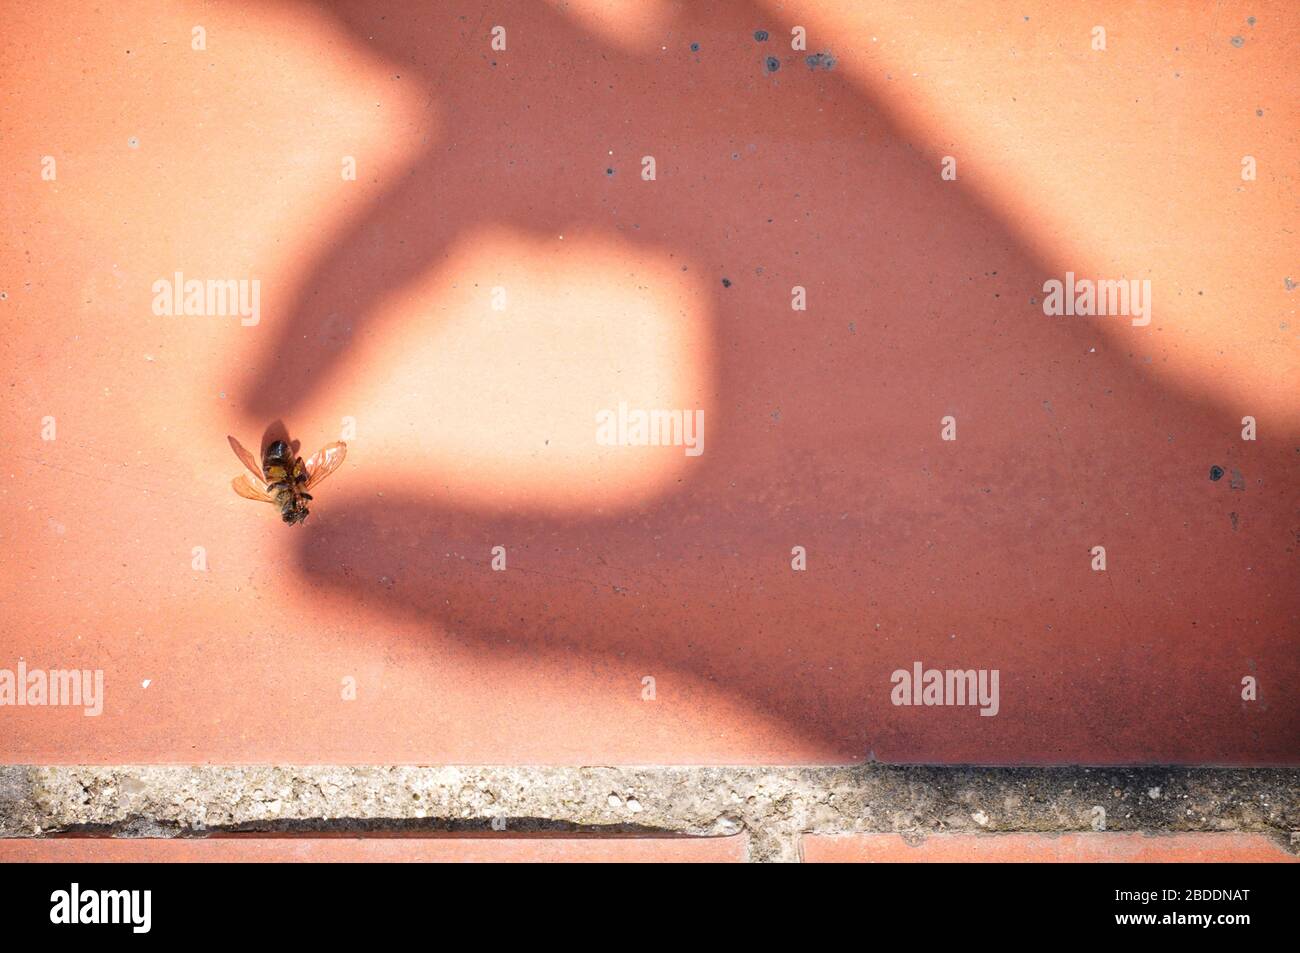 Images conceptuelles d'une ombre d'une main humaine attrapant une abeille morte tuée à cause de produits chimiques de fumigants Banque D'Images